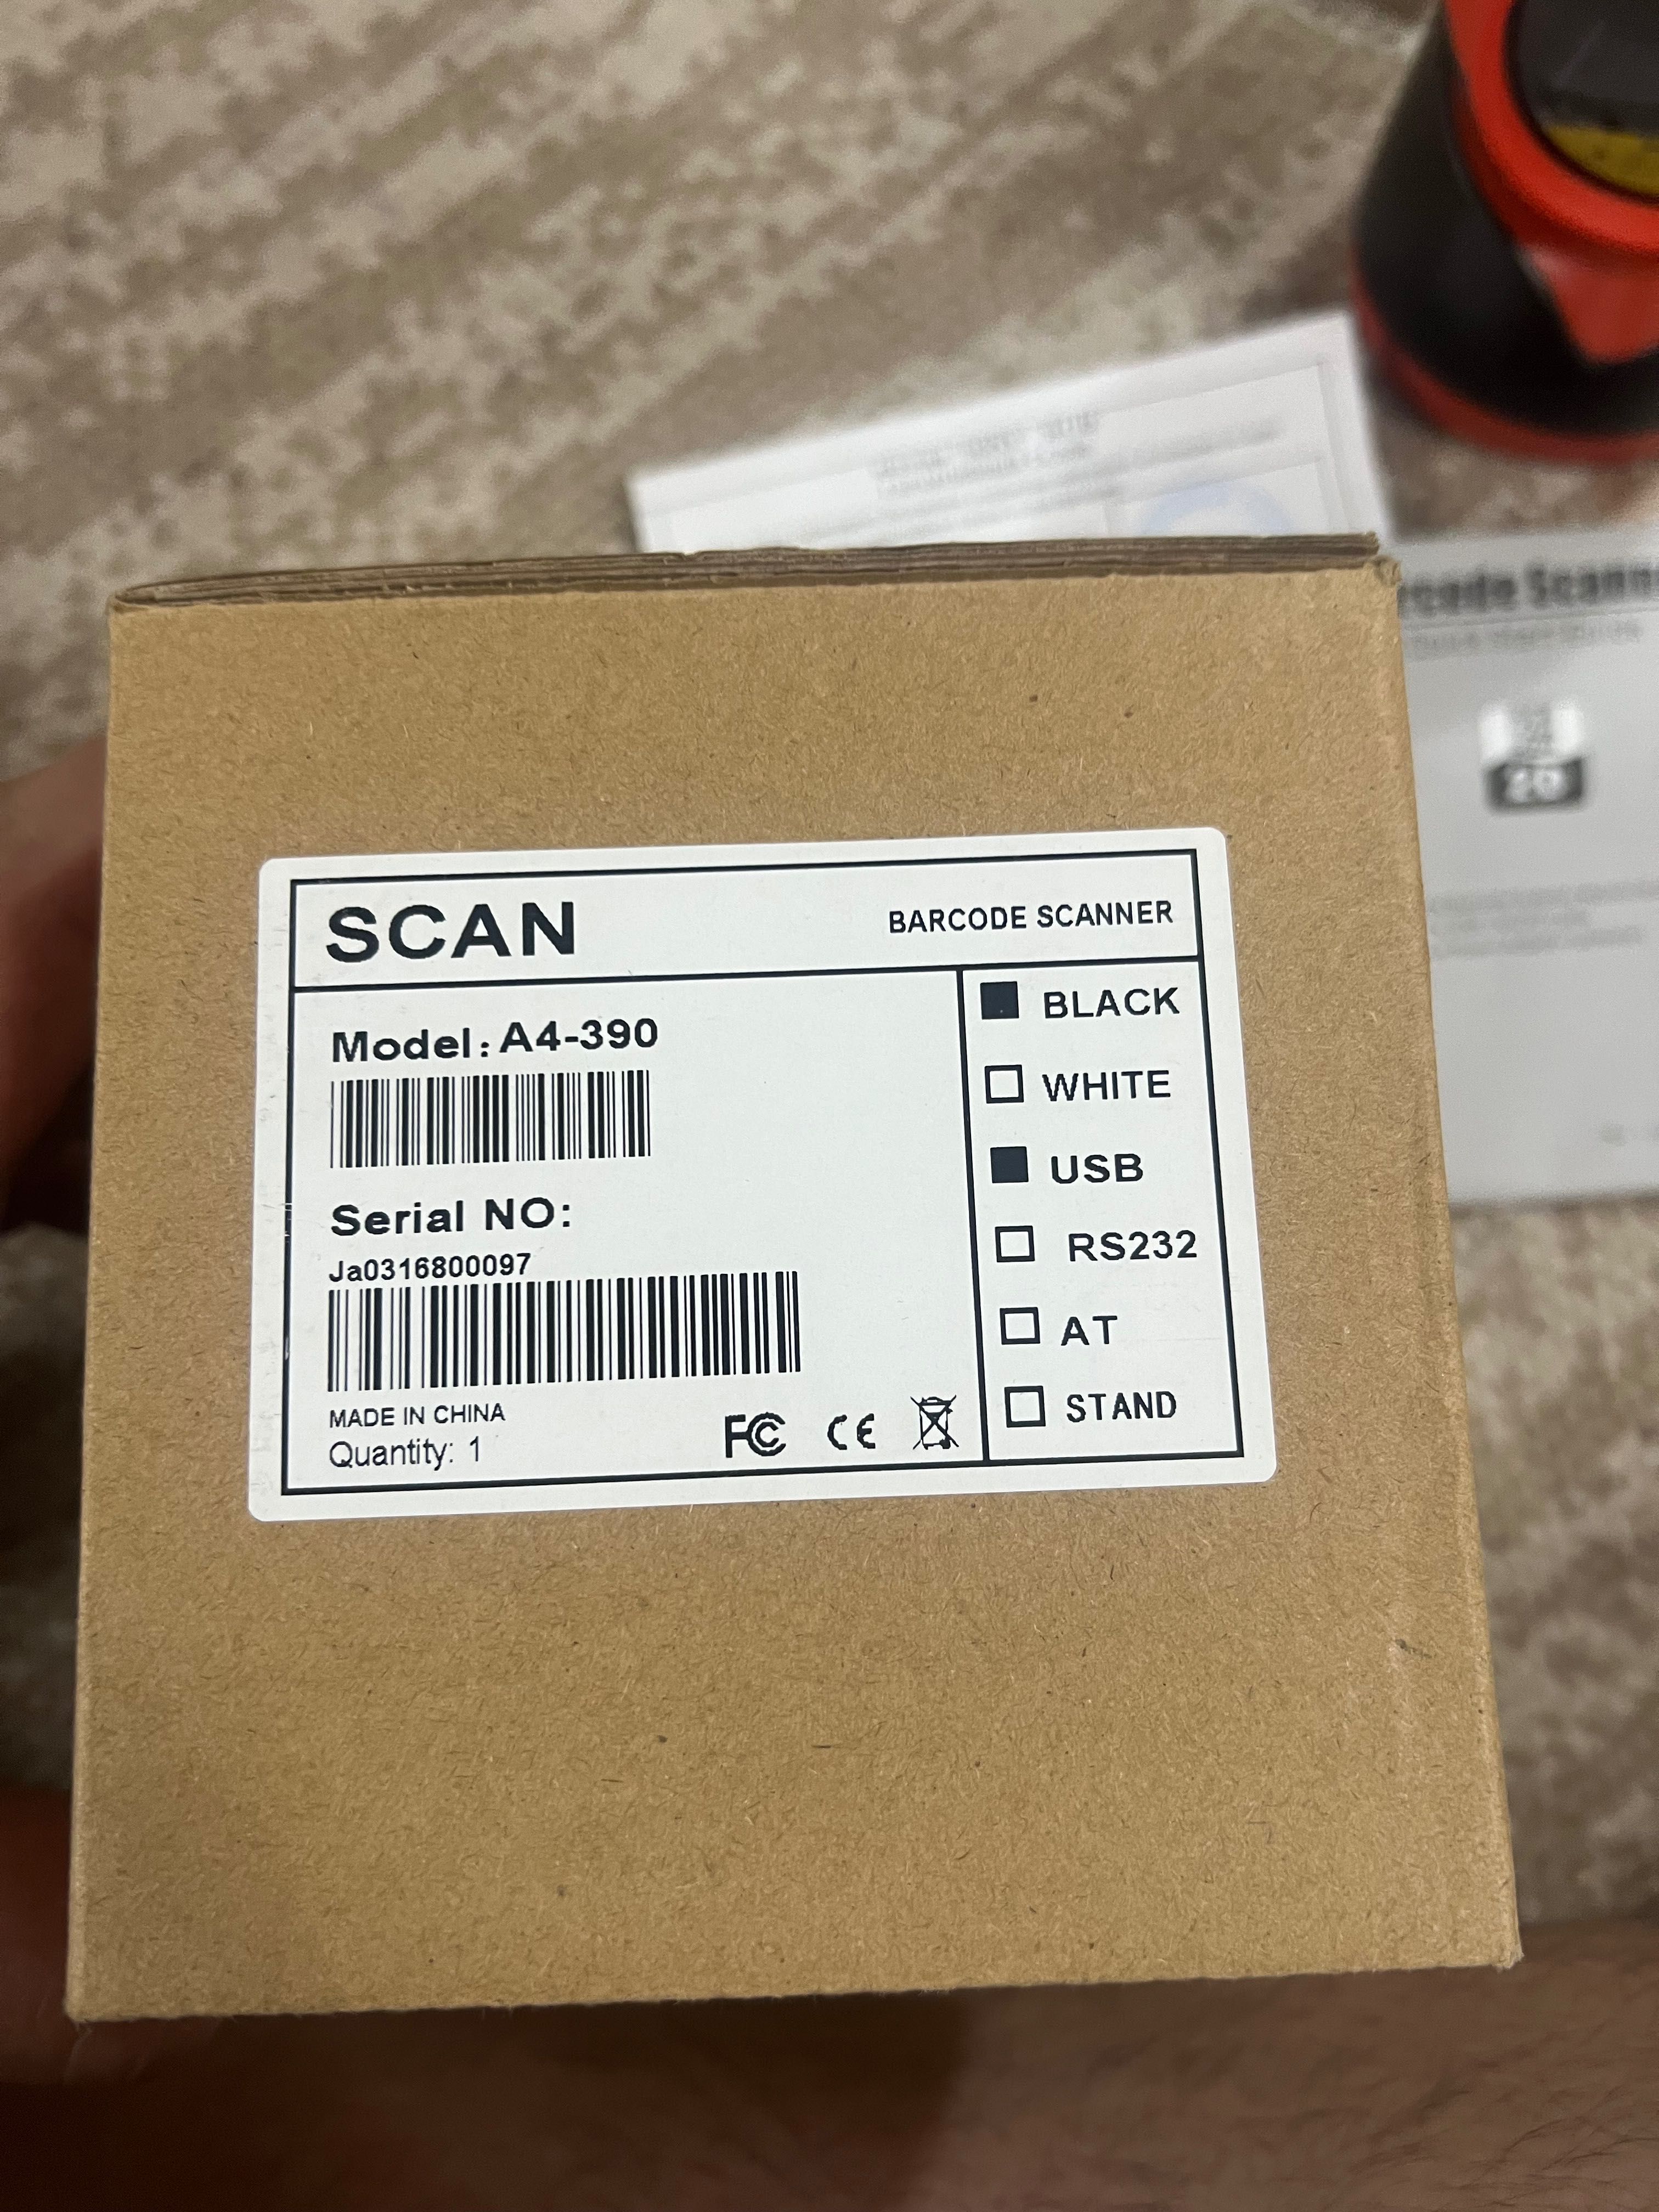 Scan model A4-390